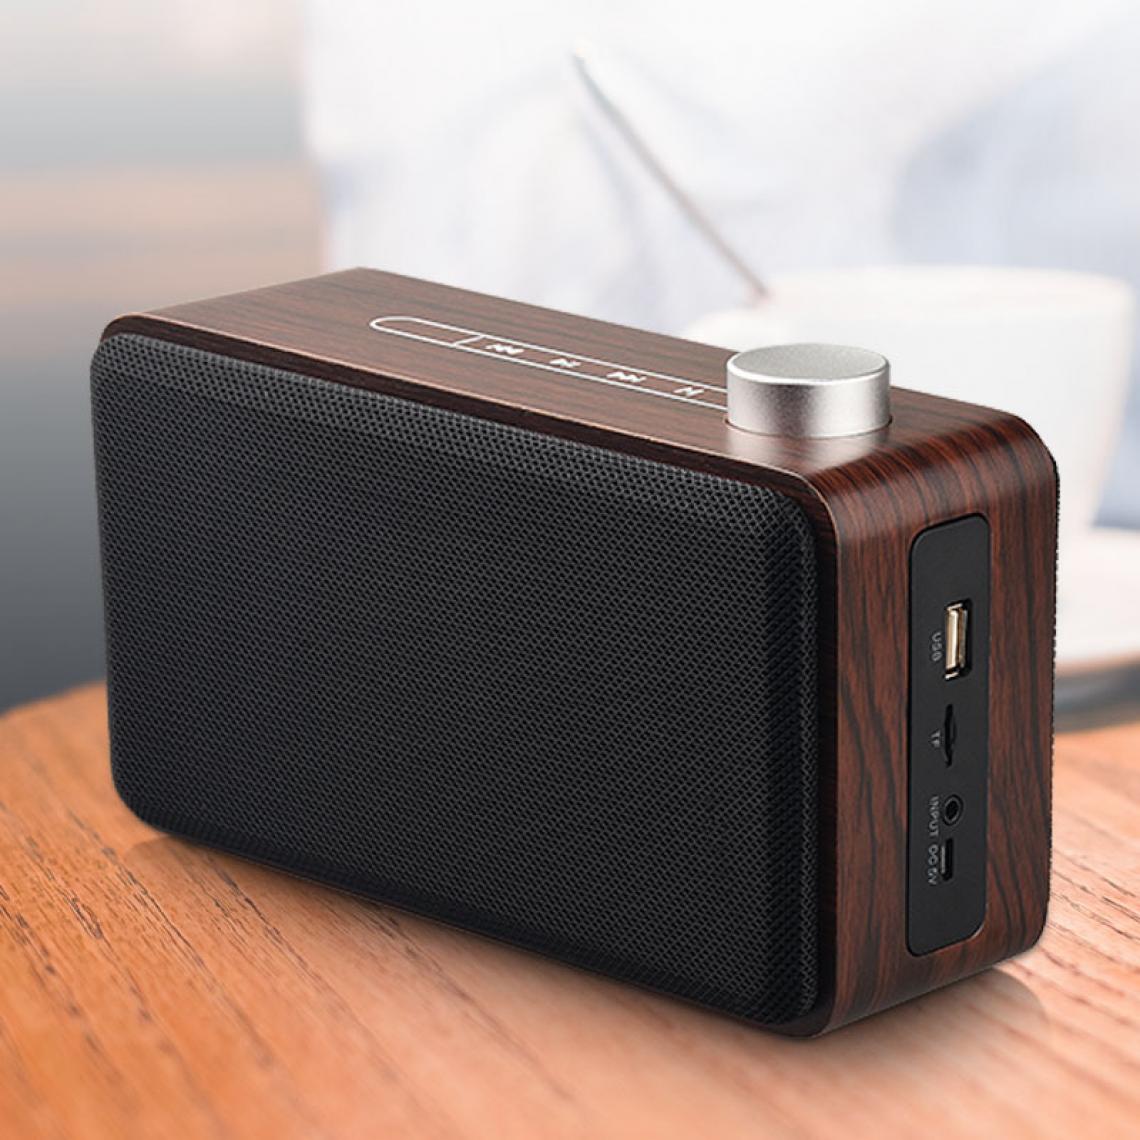 Universal - Haut-parleur Bluetooth portable en bois Subwoofer sans fil Boîte stéréo support lecteur de musique | Haut-parleur portable (grain de bois de noix) - Enceinte PC